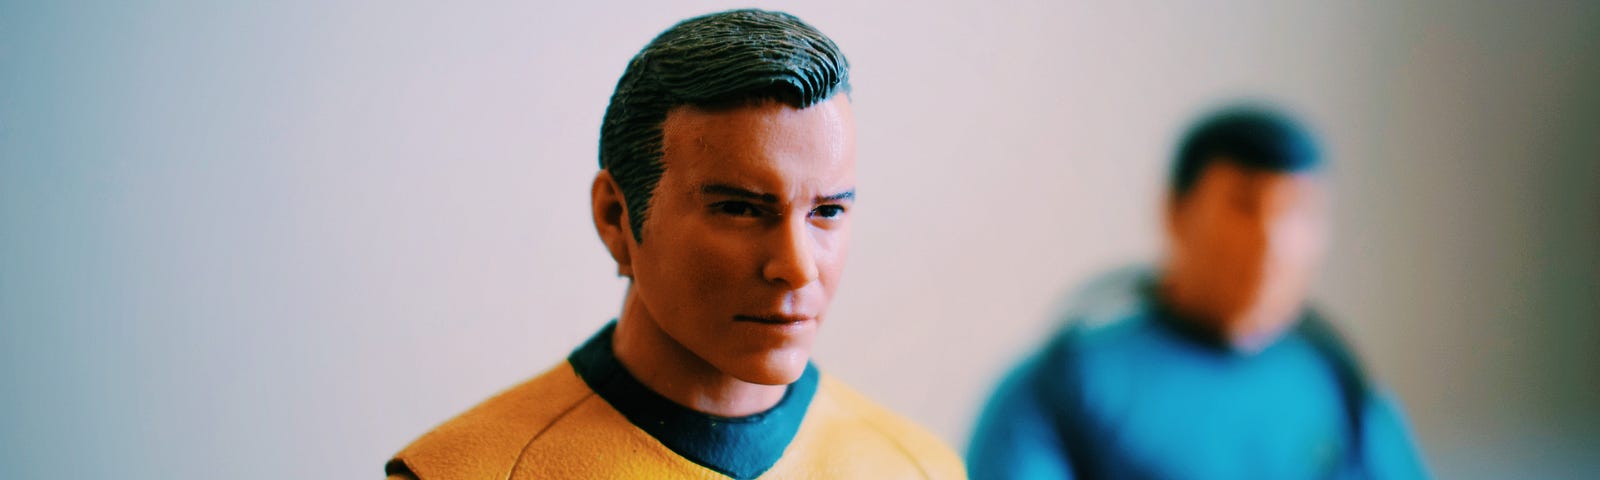 Star Trek action figures